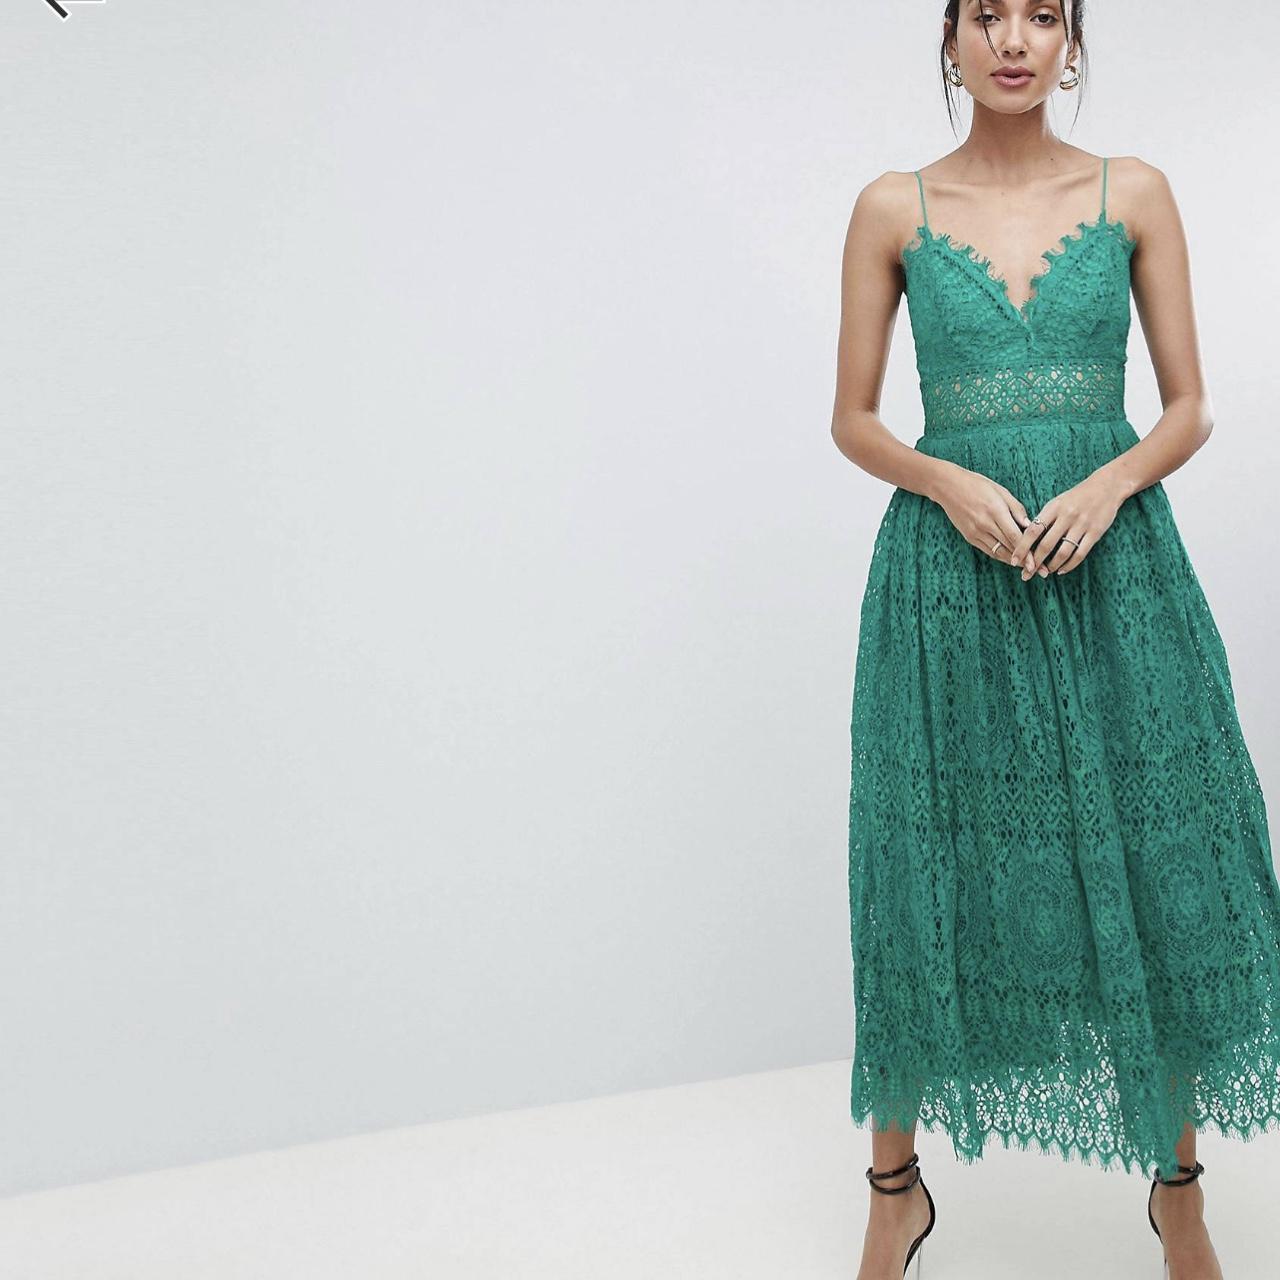 ASOS Women's Green Dress | Depop